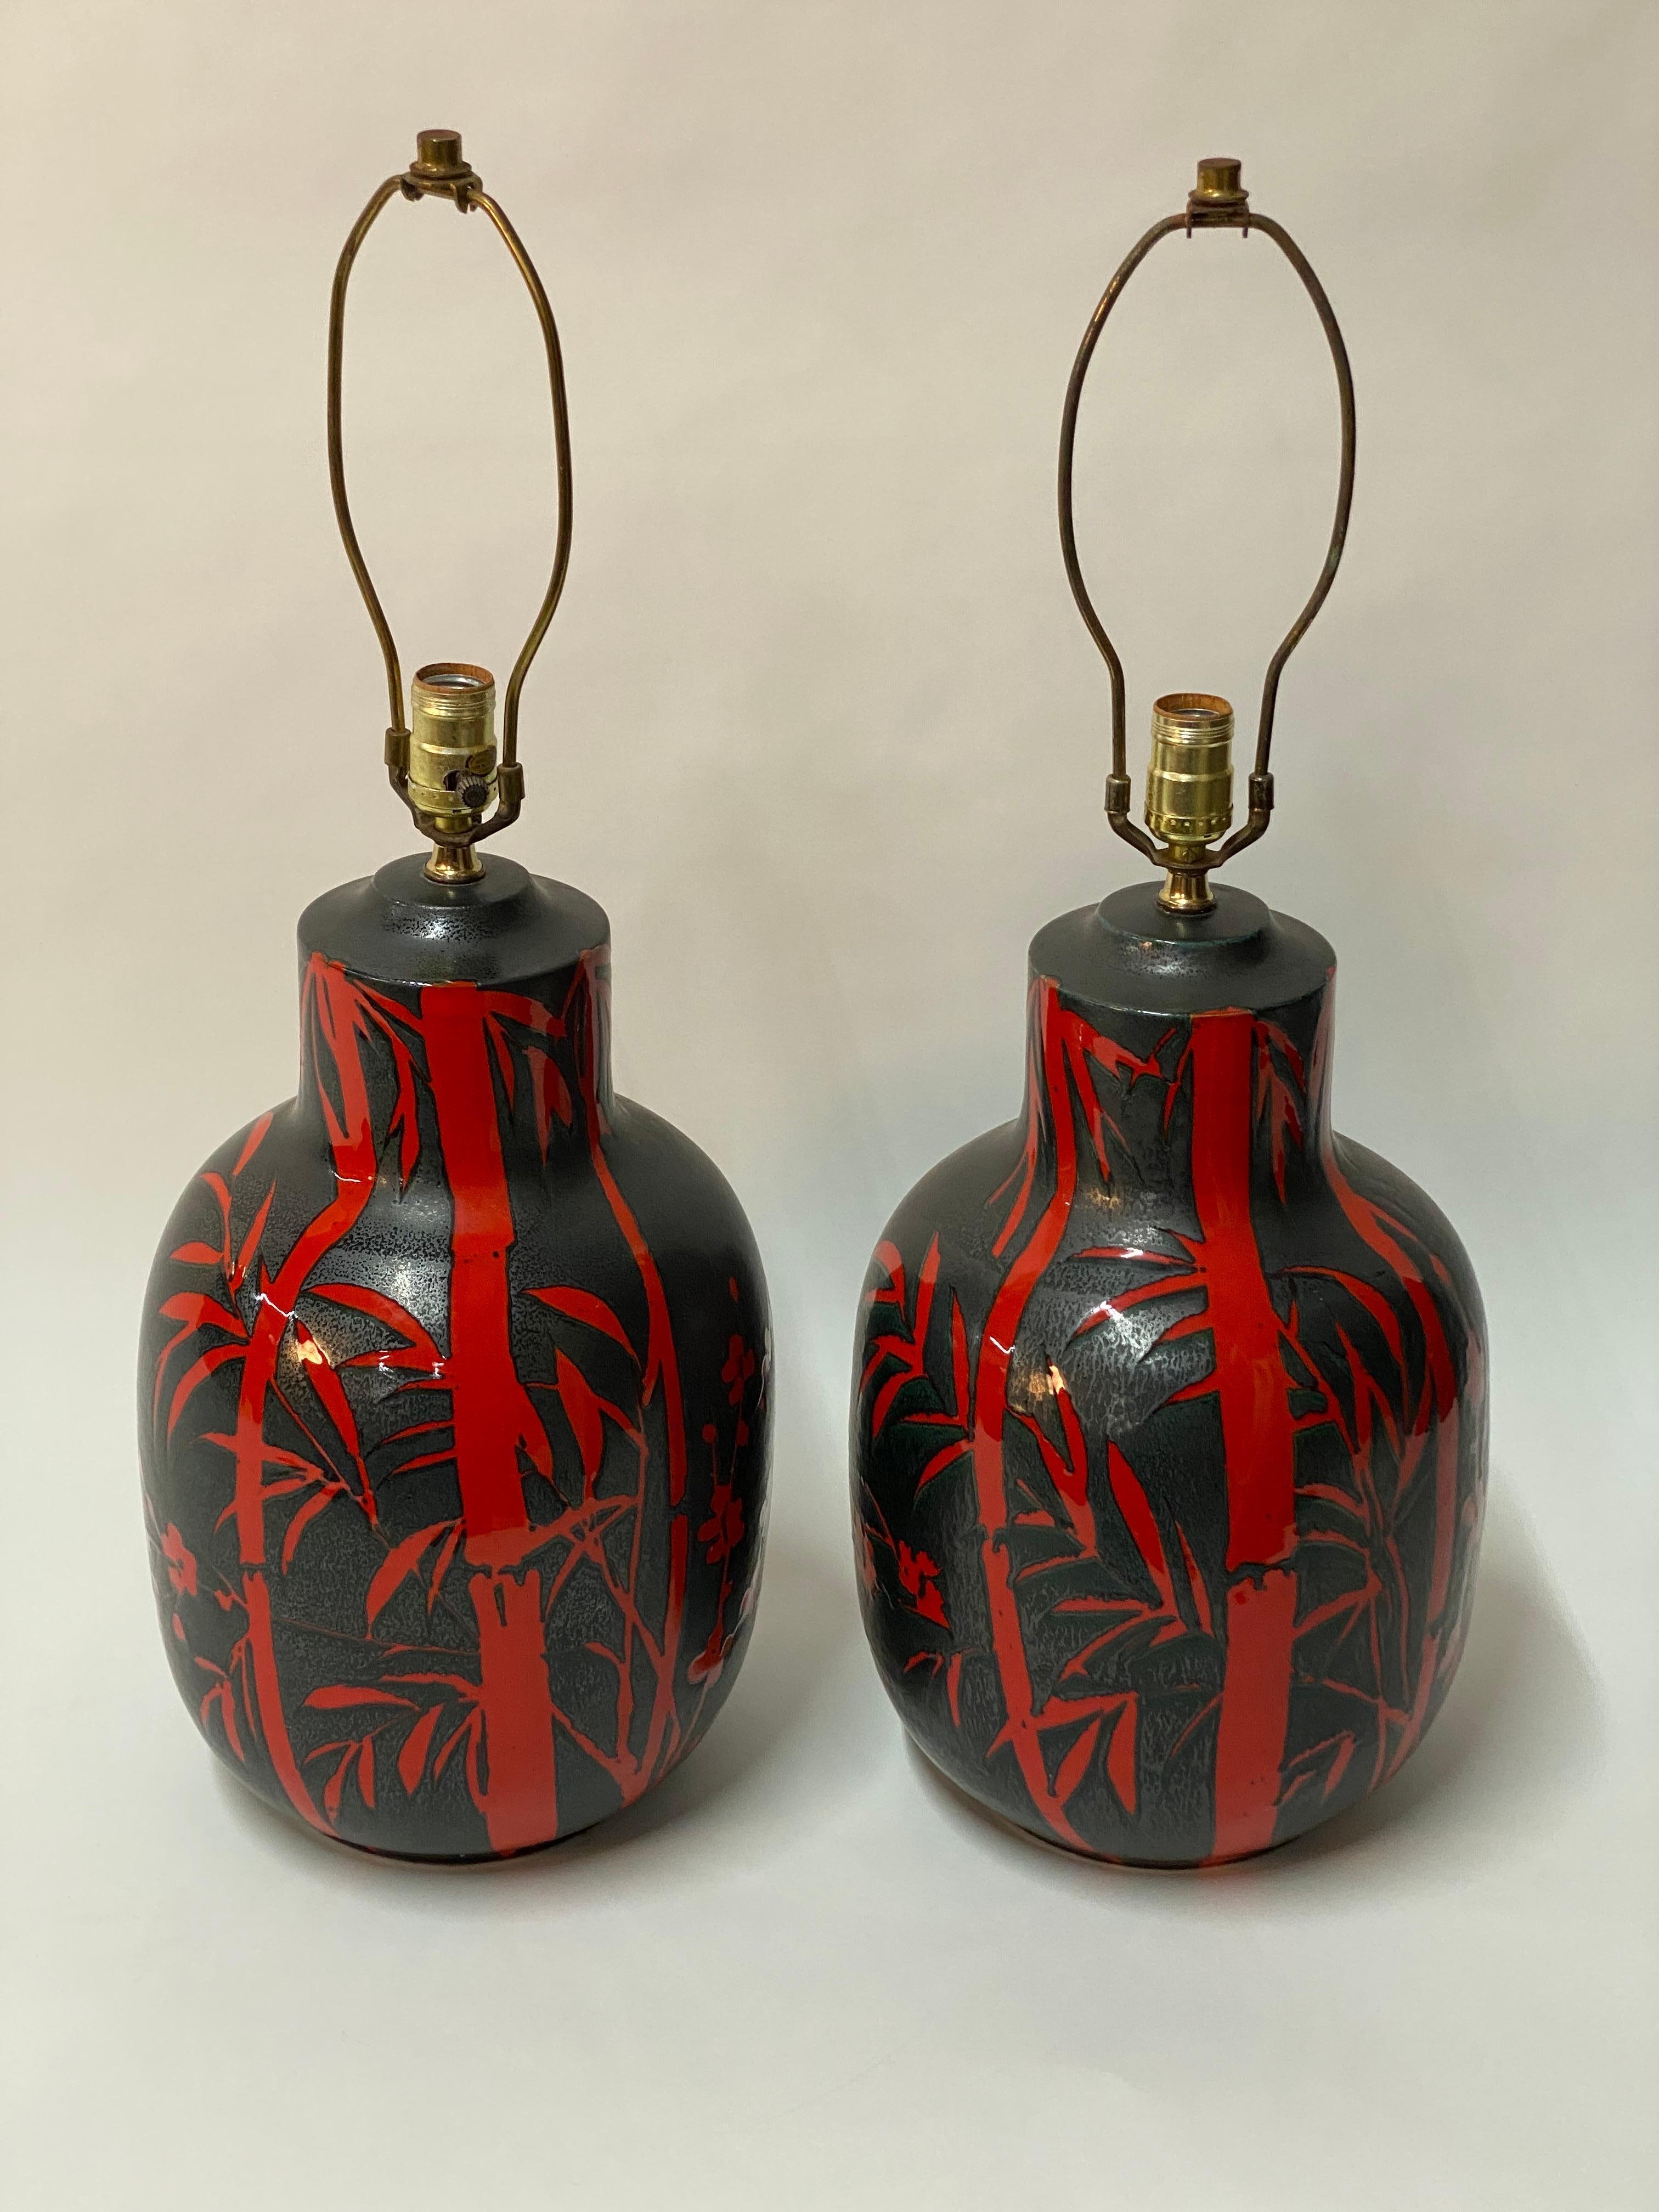 Superbe paire de lampes de table en poterie italienne Alvino Bagni Bitossi. Décorée et émaillée en gris anthracite gunmetal moucheté/noir et vermillon. Le décor en rouge est composé de bambous, de papillons et de fleurs de pêcher. Les photos ne